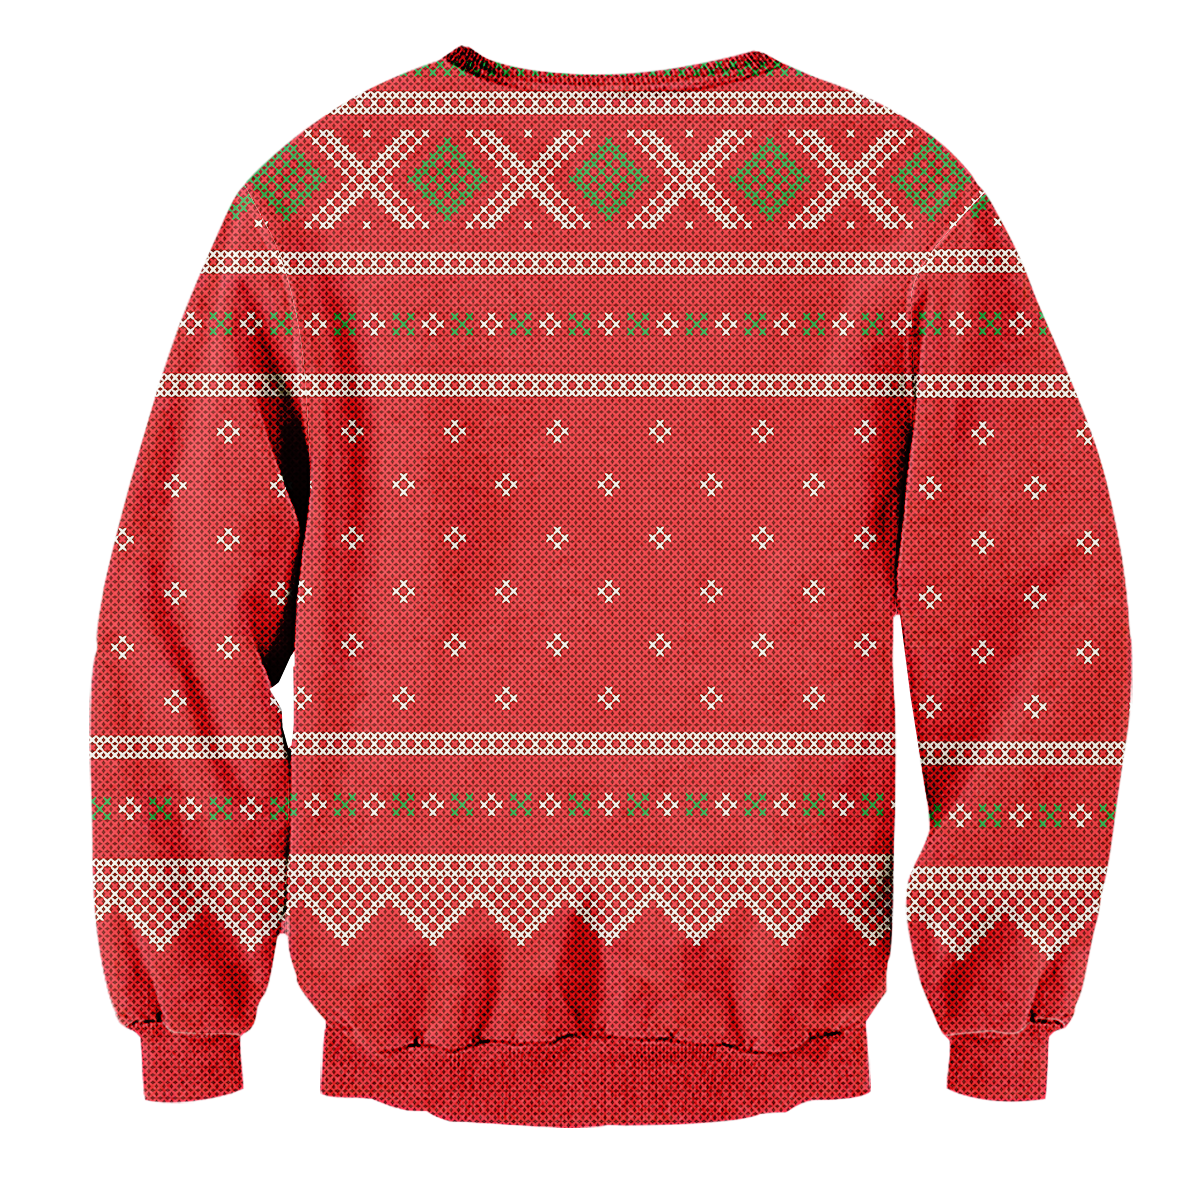 Jingle Bell Rock Unisex Sweater